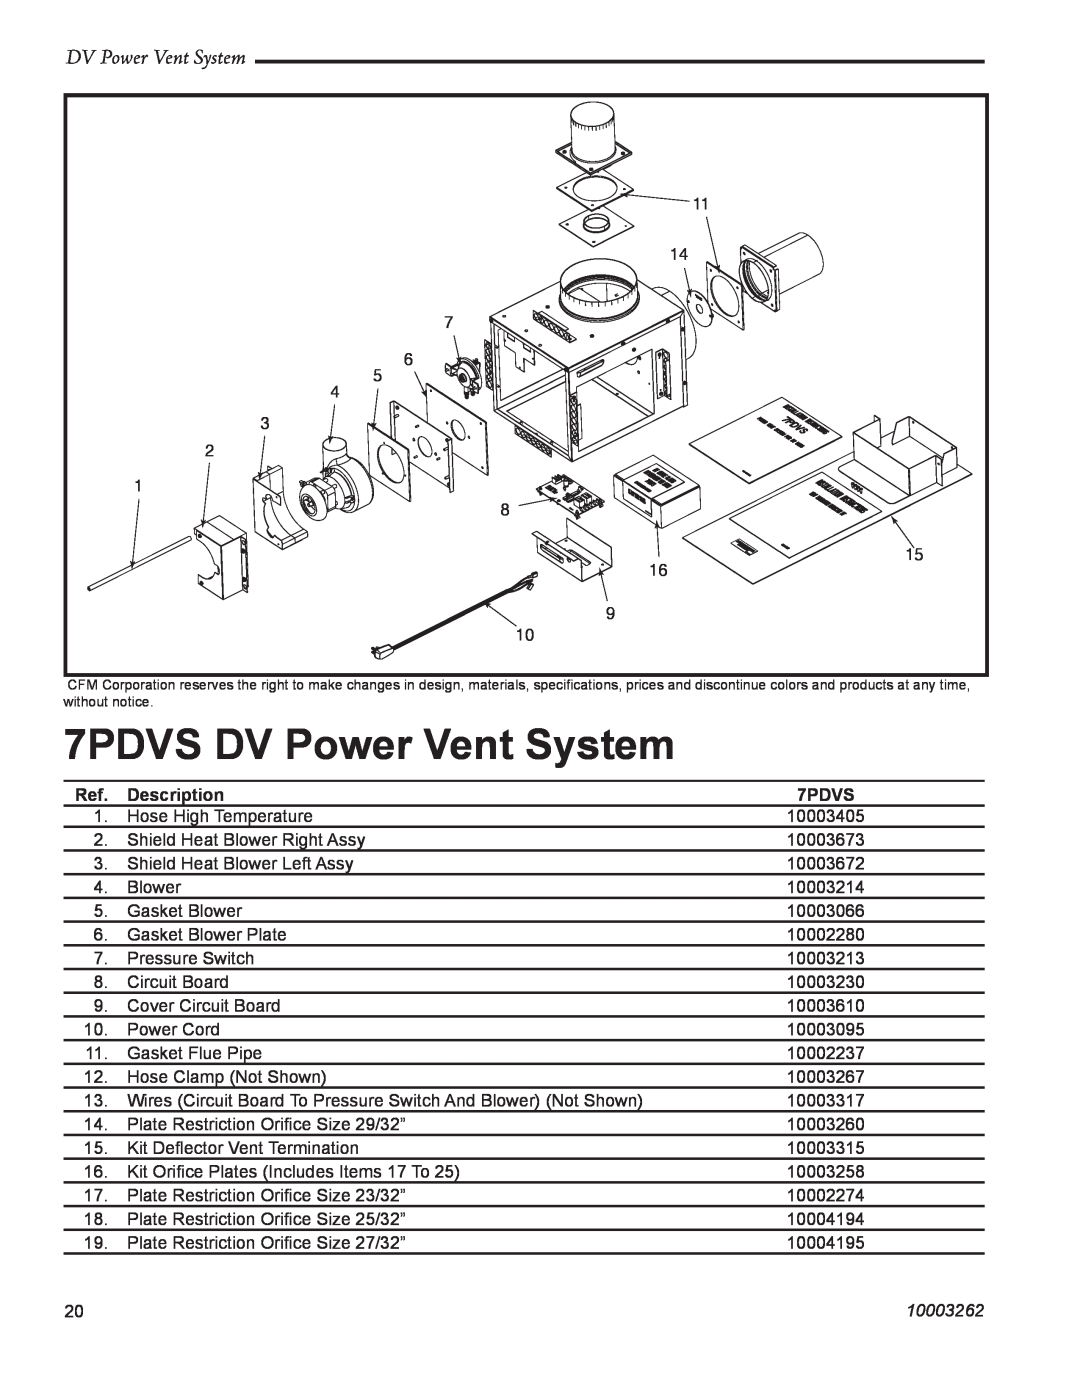 Vermont Casting manual 7PDVS DV Power Vent System, Description, 10003262 